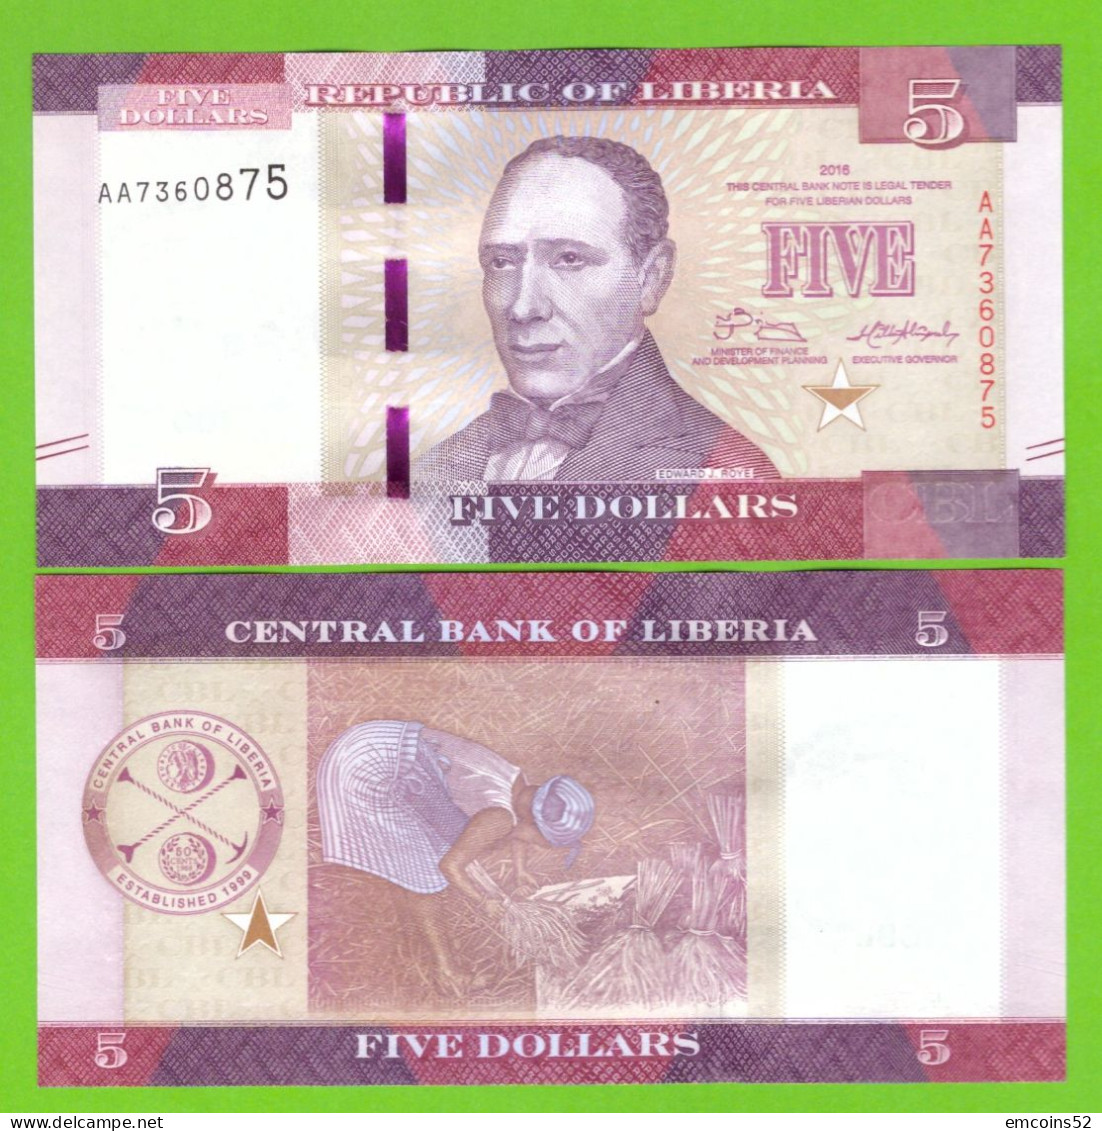 LIBERIA 5 DOLLARS 2016 P-31 UNC - Liberia